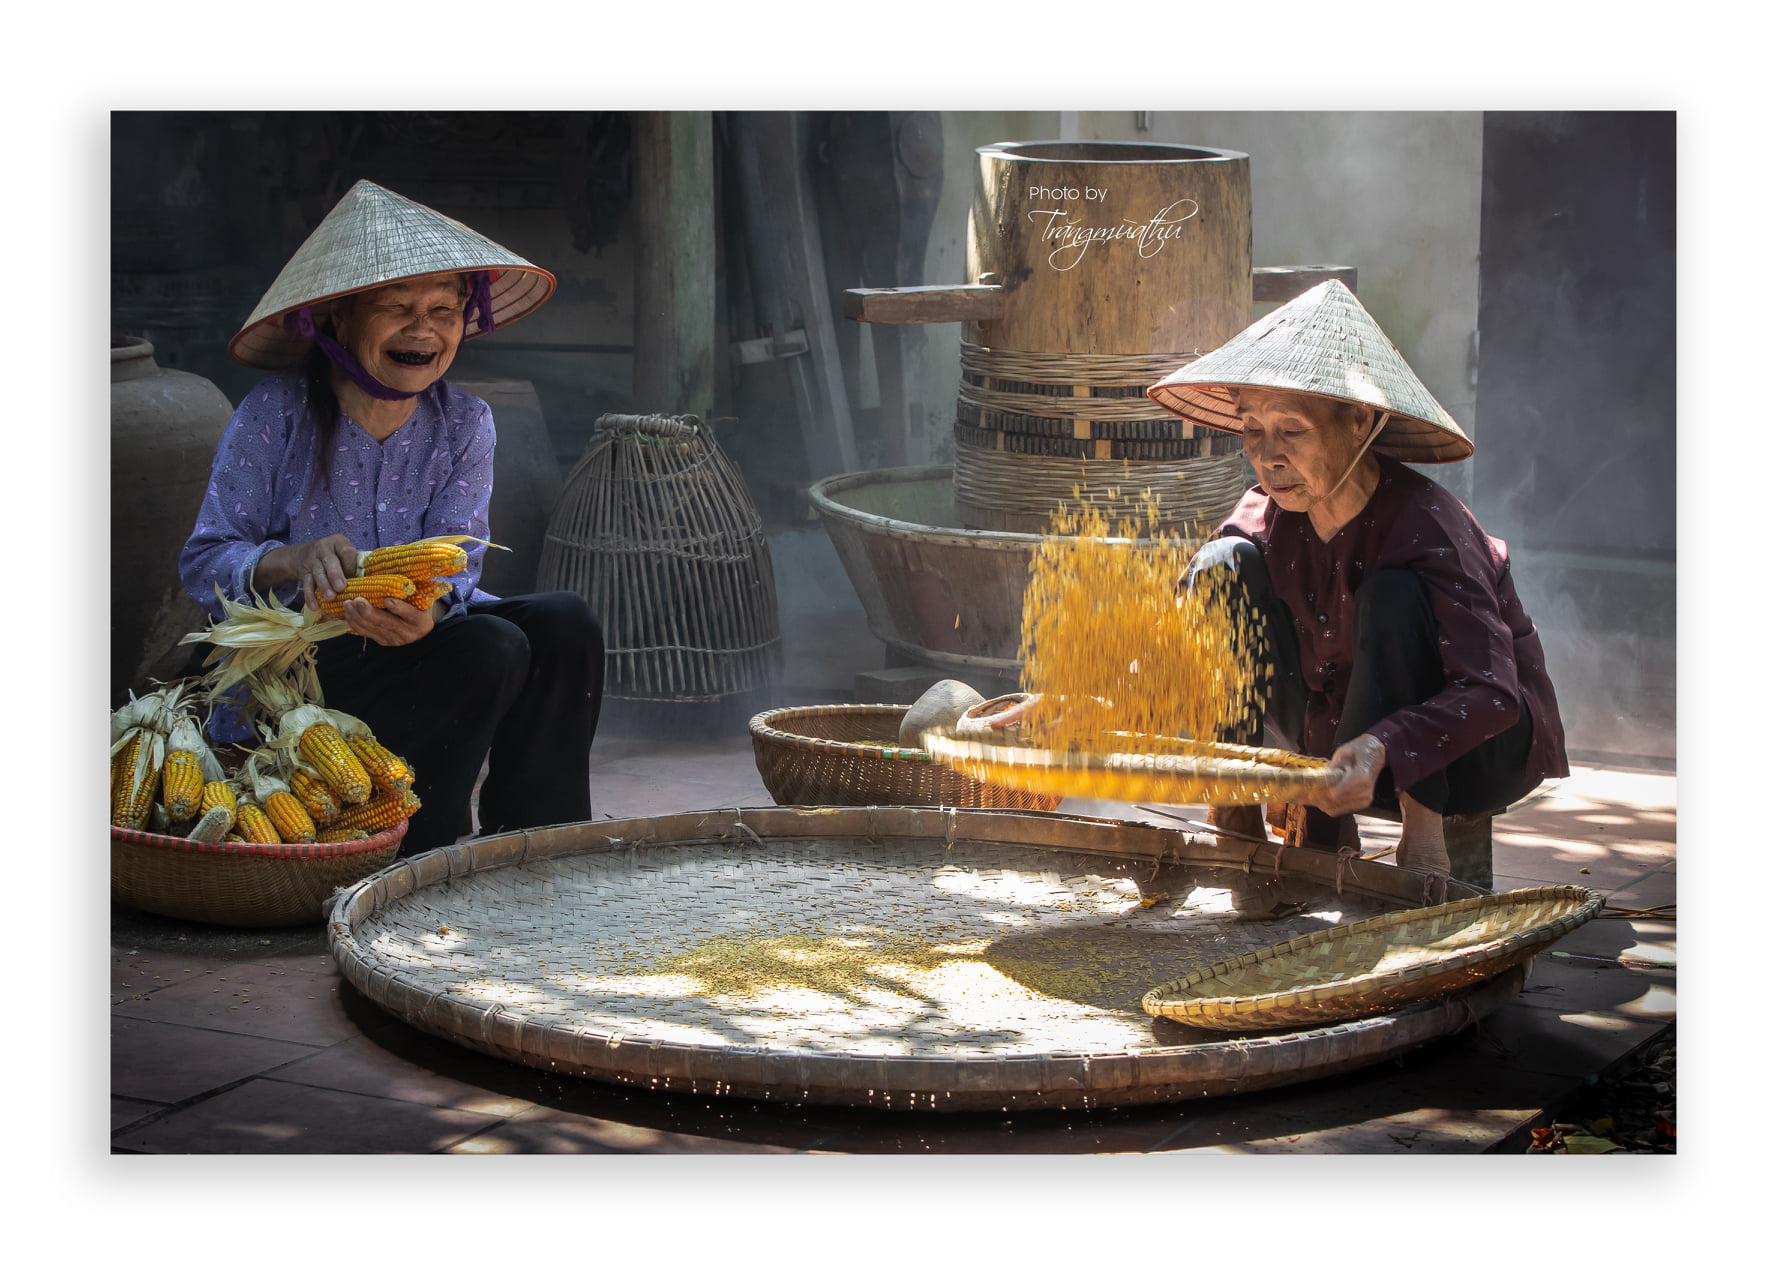 Làng quê Việt Nam - Những hình ảnh của ngôi làng nhỏ nằm giữa cánh đồng lúa đồng thời được trang trí bởi những viên đá tự nhiên sẽ làm cho bạn cảm thấy đến những giây phút yên tĩnh và bình yên trong nơi này.